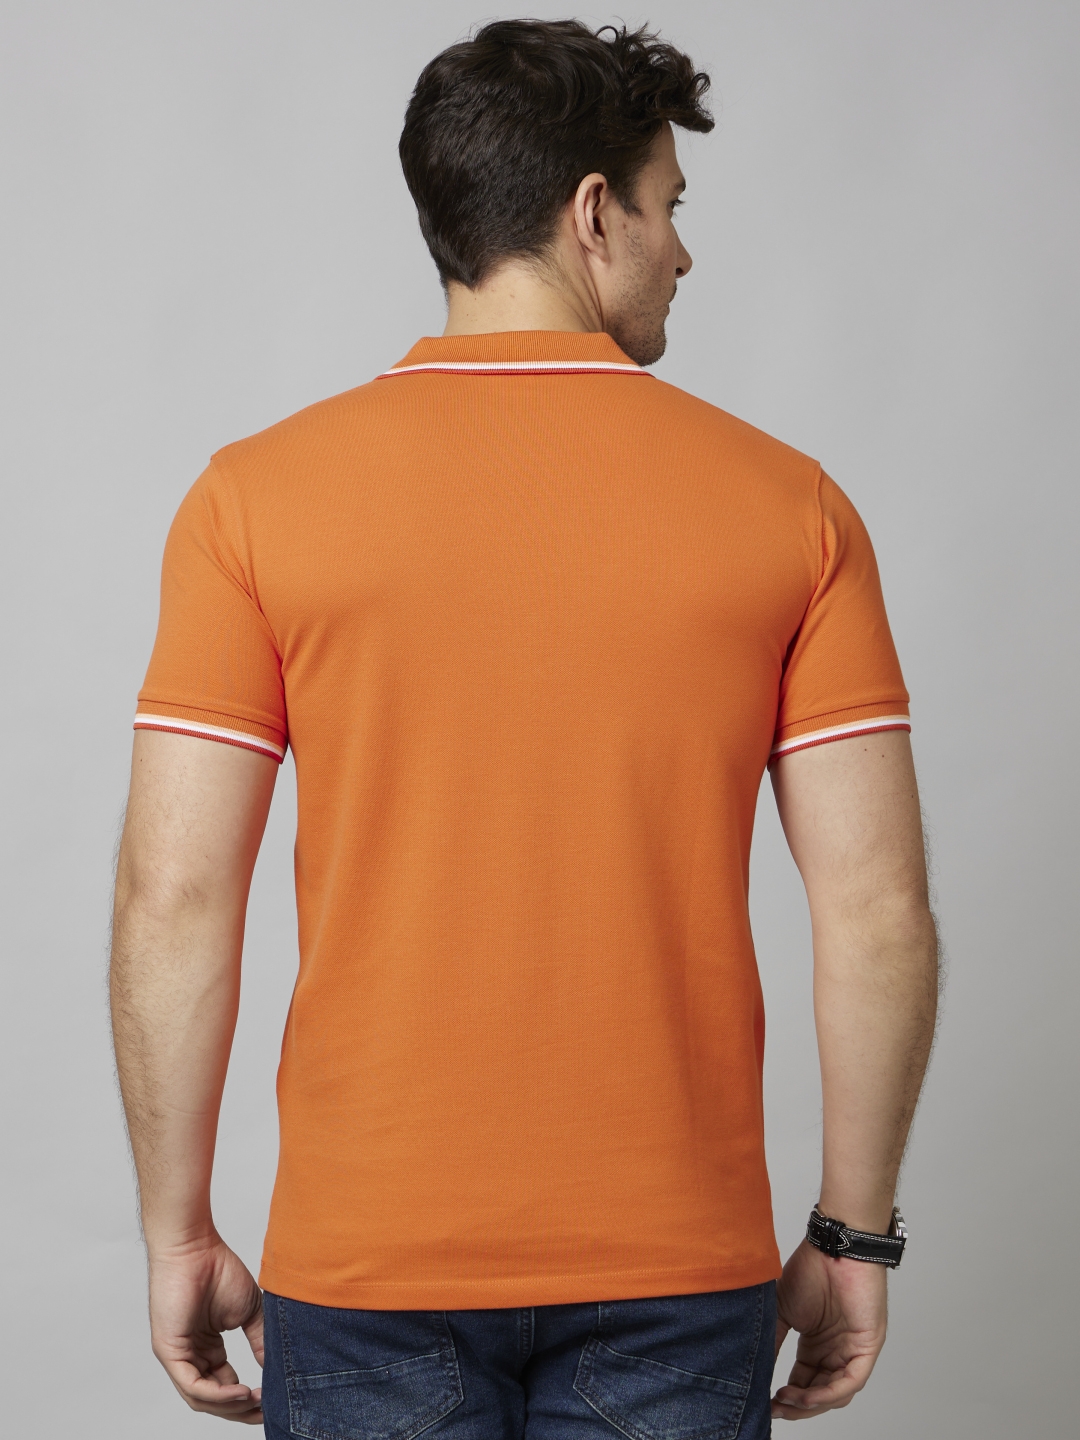 Men's Orange Solid Polos